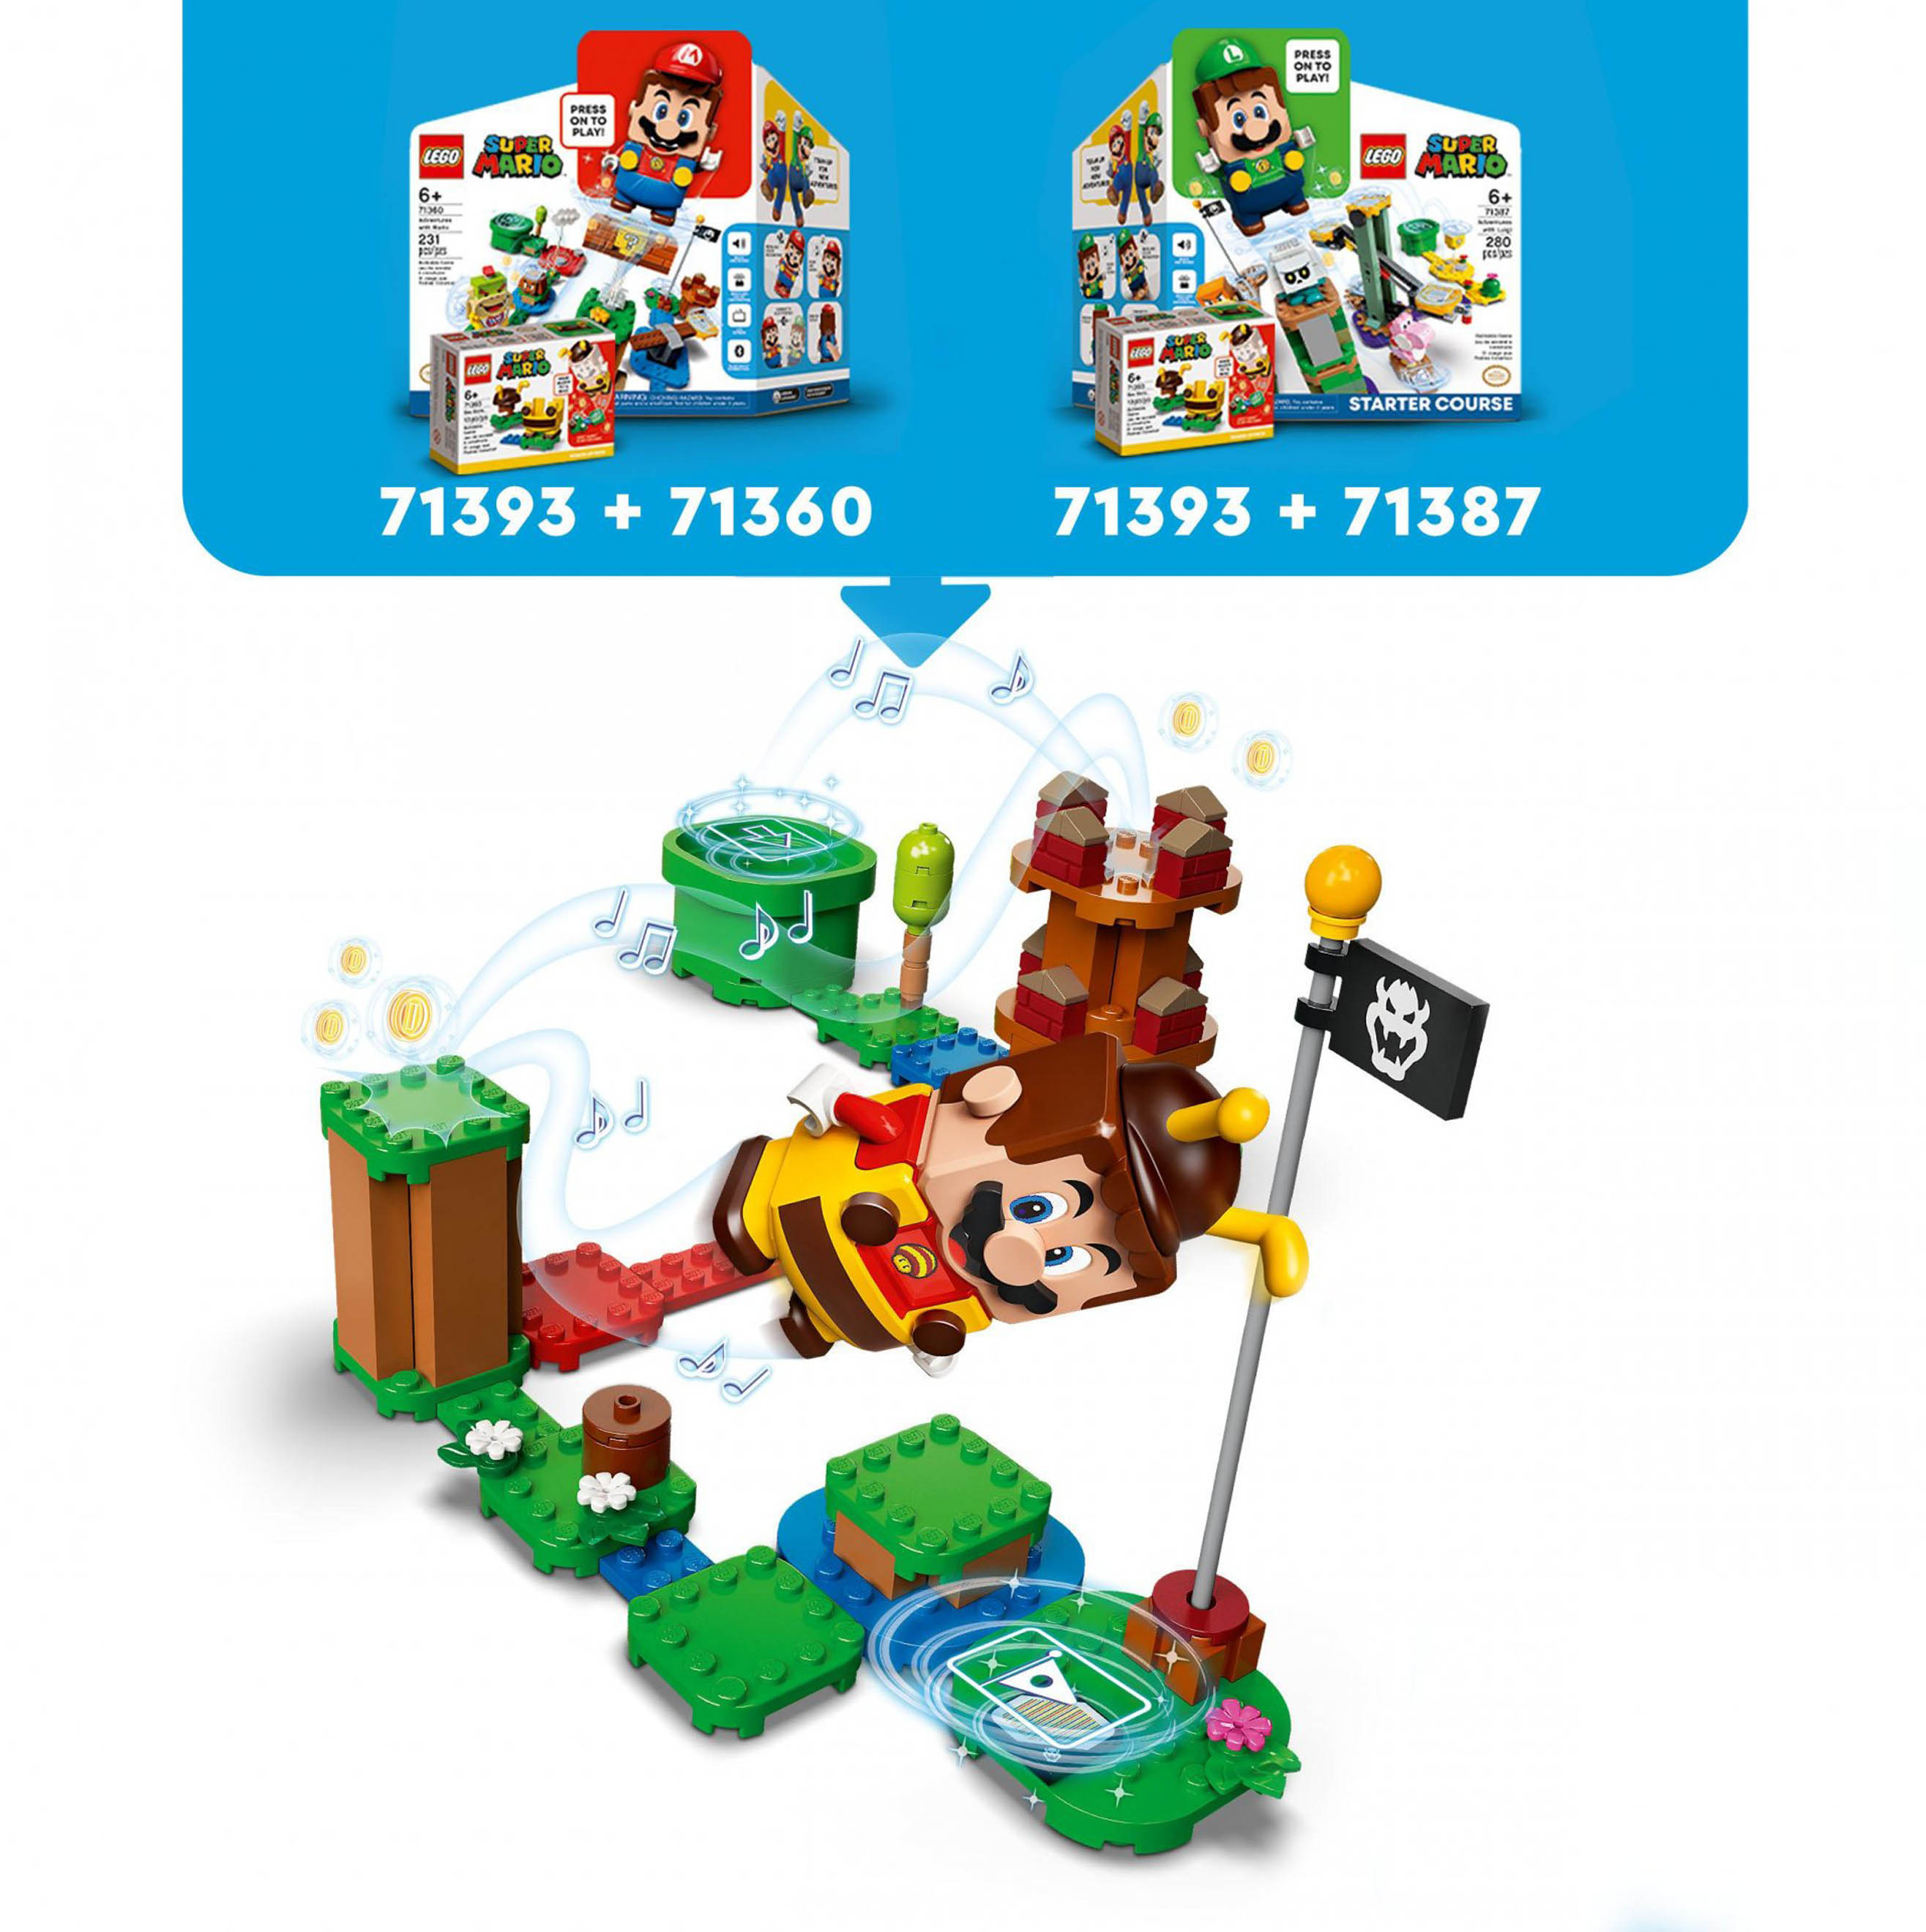 LEGO Set Costume Mario Ape - Power Up Pack, Giocattoli da Collezione, Giocattoli 71393, , large